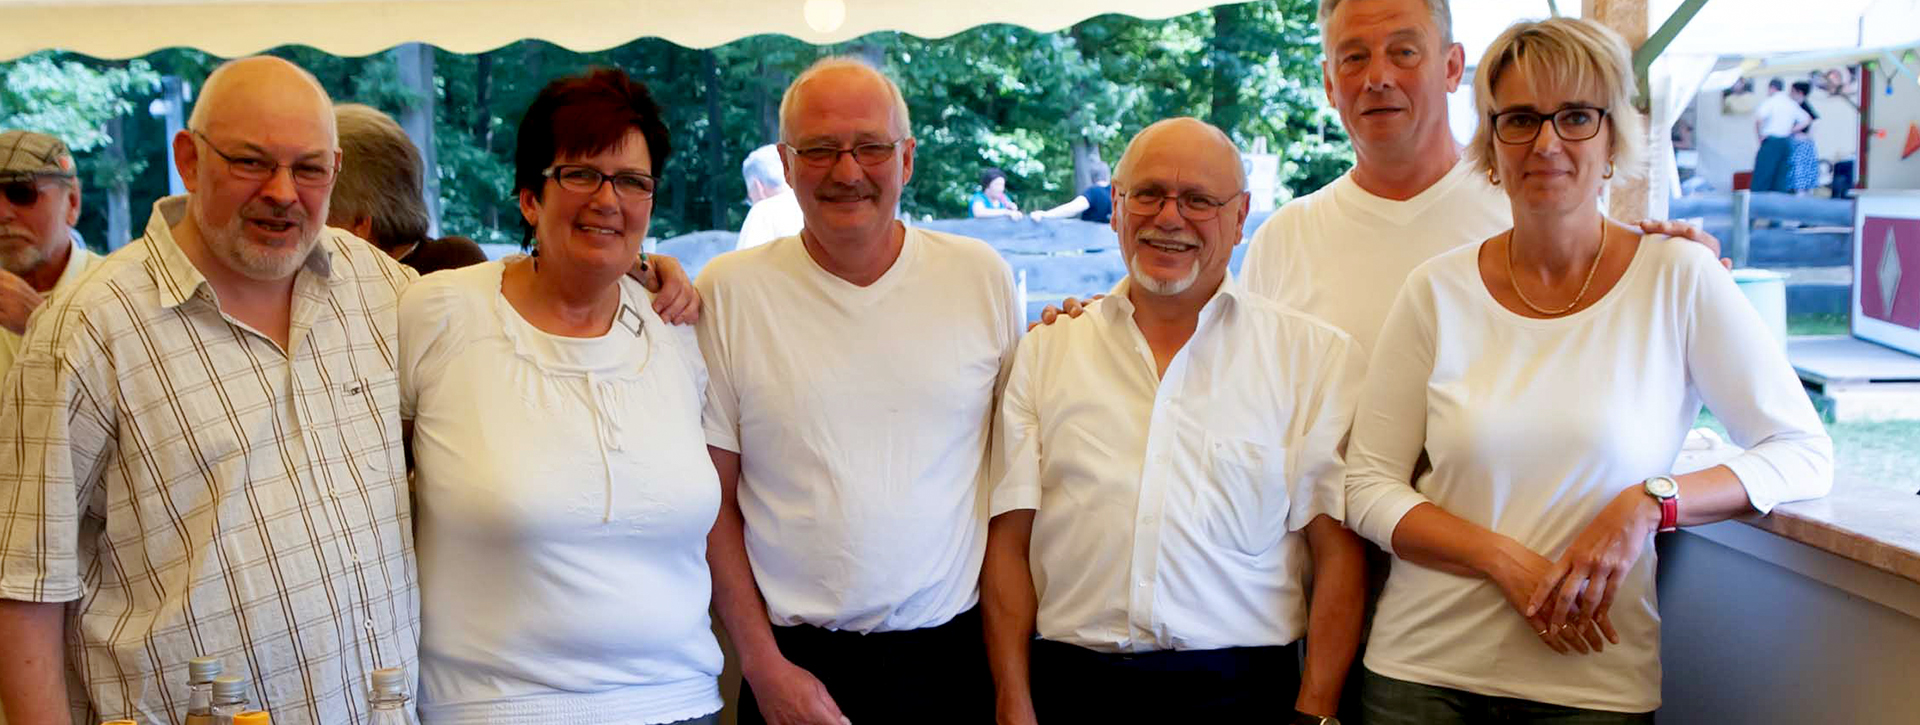 Gruppen von Frauen und Männern in weißen T-Shirts